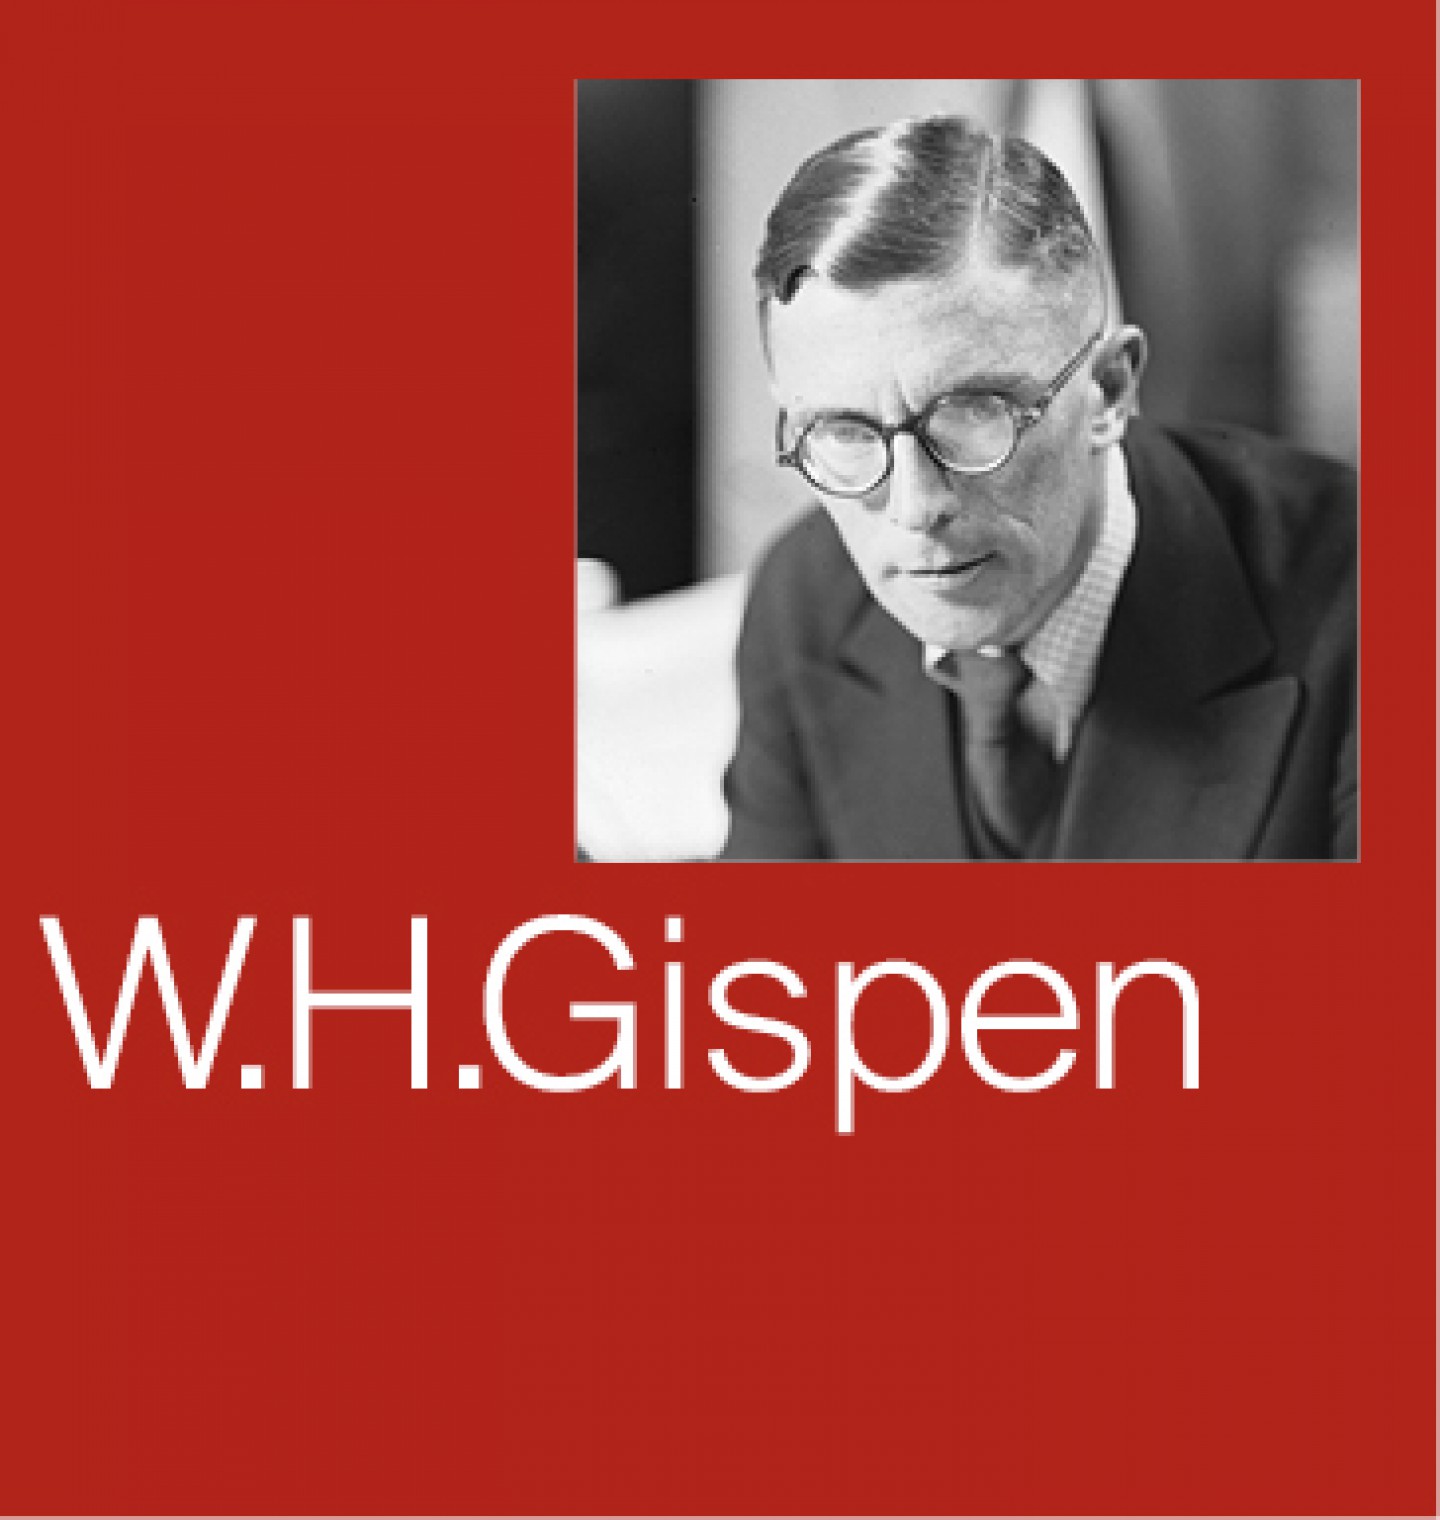 W.H. Gispen 